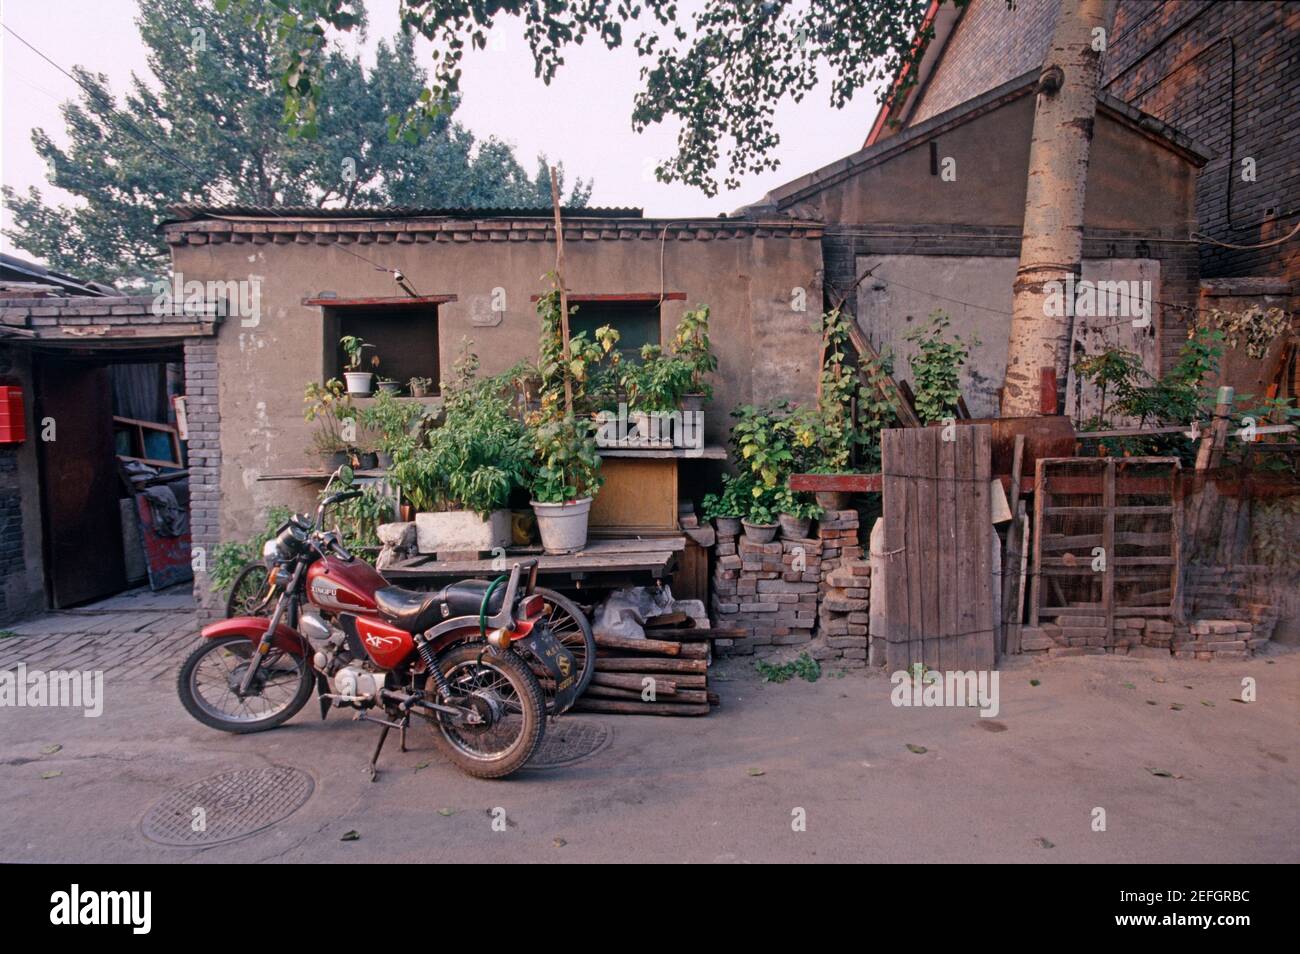 Former residence of Lu Xun and his younger brother Zhou Zuoren , Zhou Jianren in No.11 Badaowan, Beijing, China. The photo was taken around 2000. Stock Photo